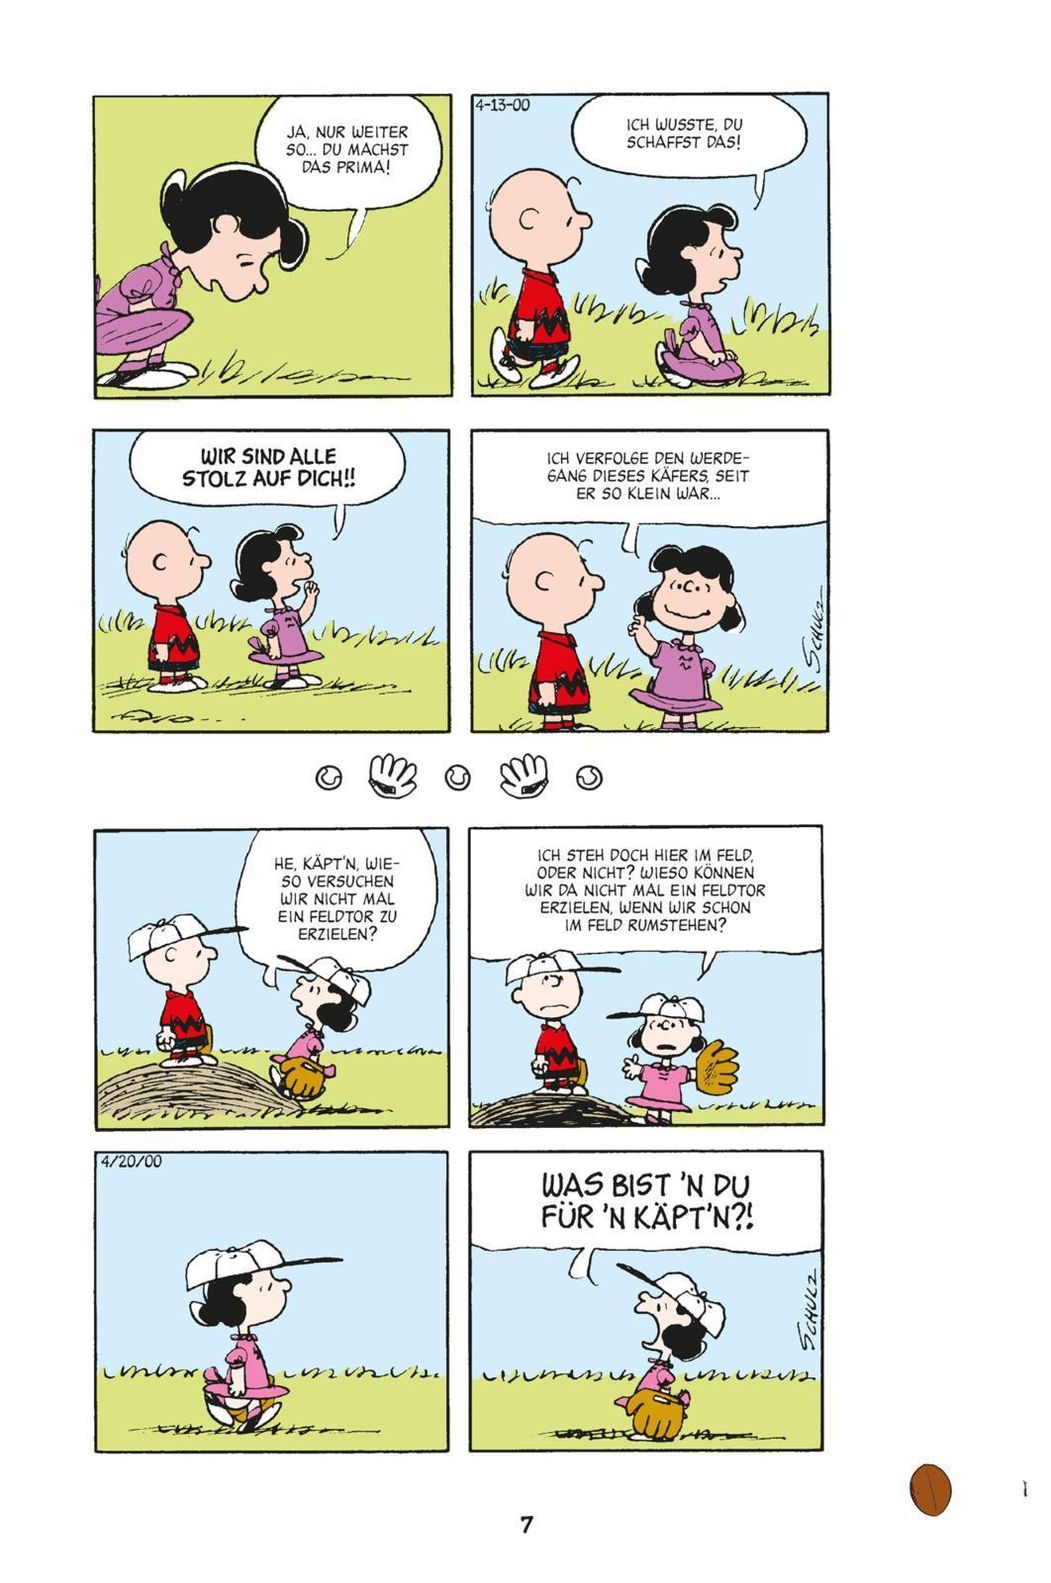 Charlie Brown und seine Freunde Peanuts für Kids Bd.2 | Weltbild.at